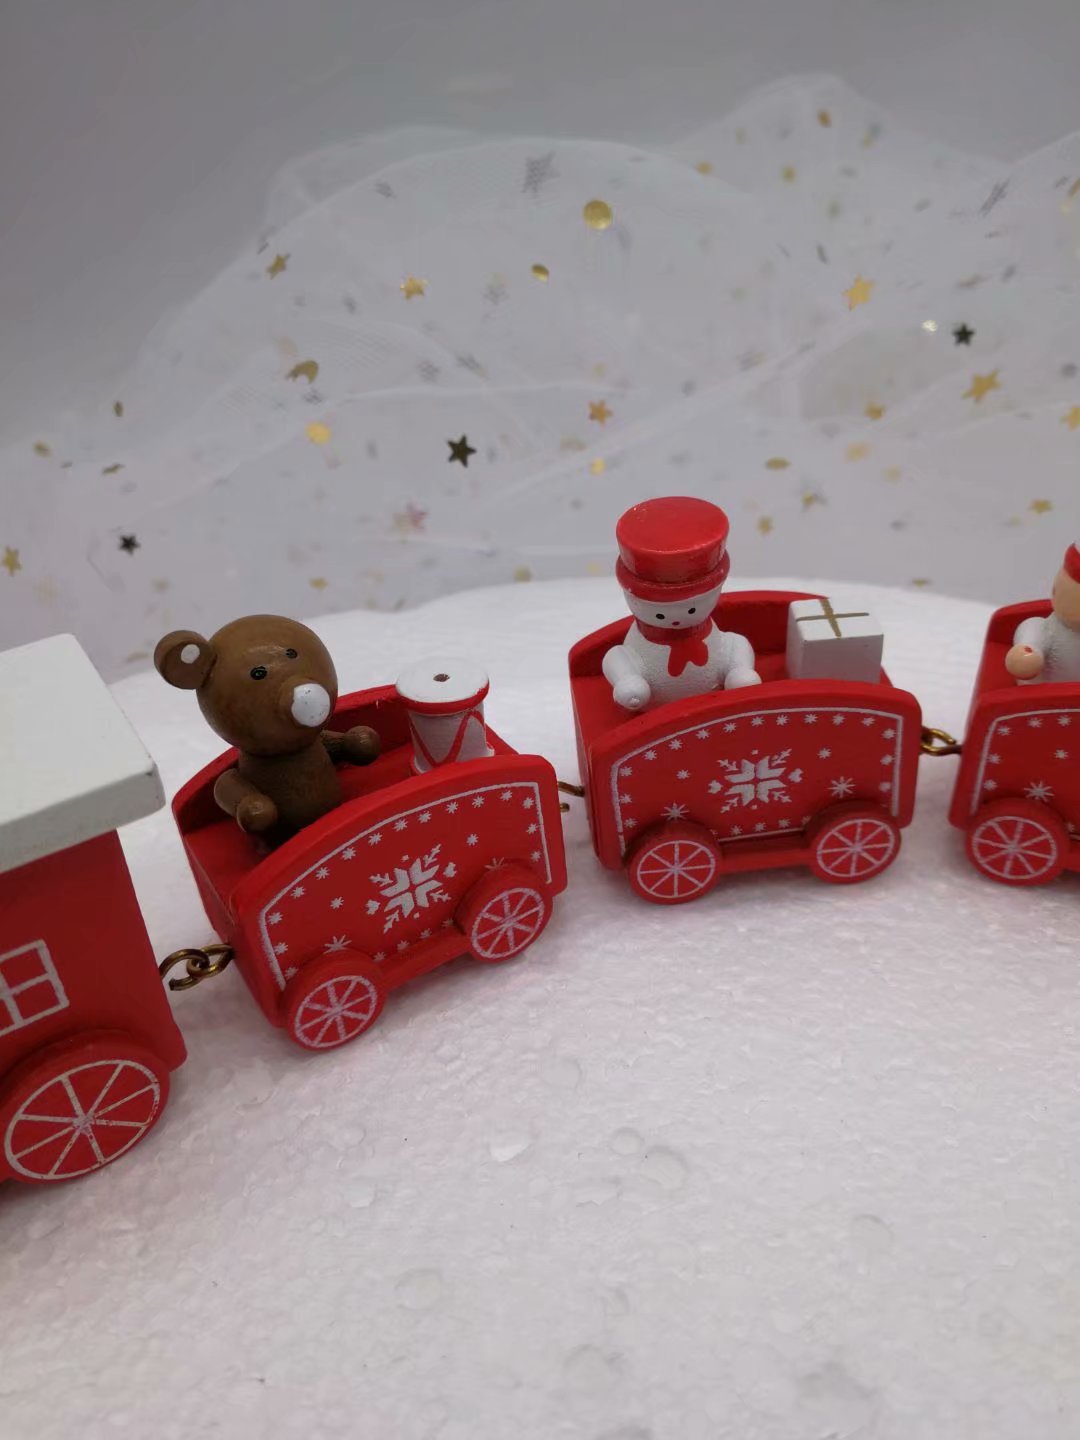 圣诞节蛋糕装饰摆件插件小火车塑料圣诞生日礼物装饰烘焙儿童玩具-阿里巴巴